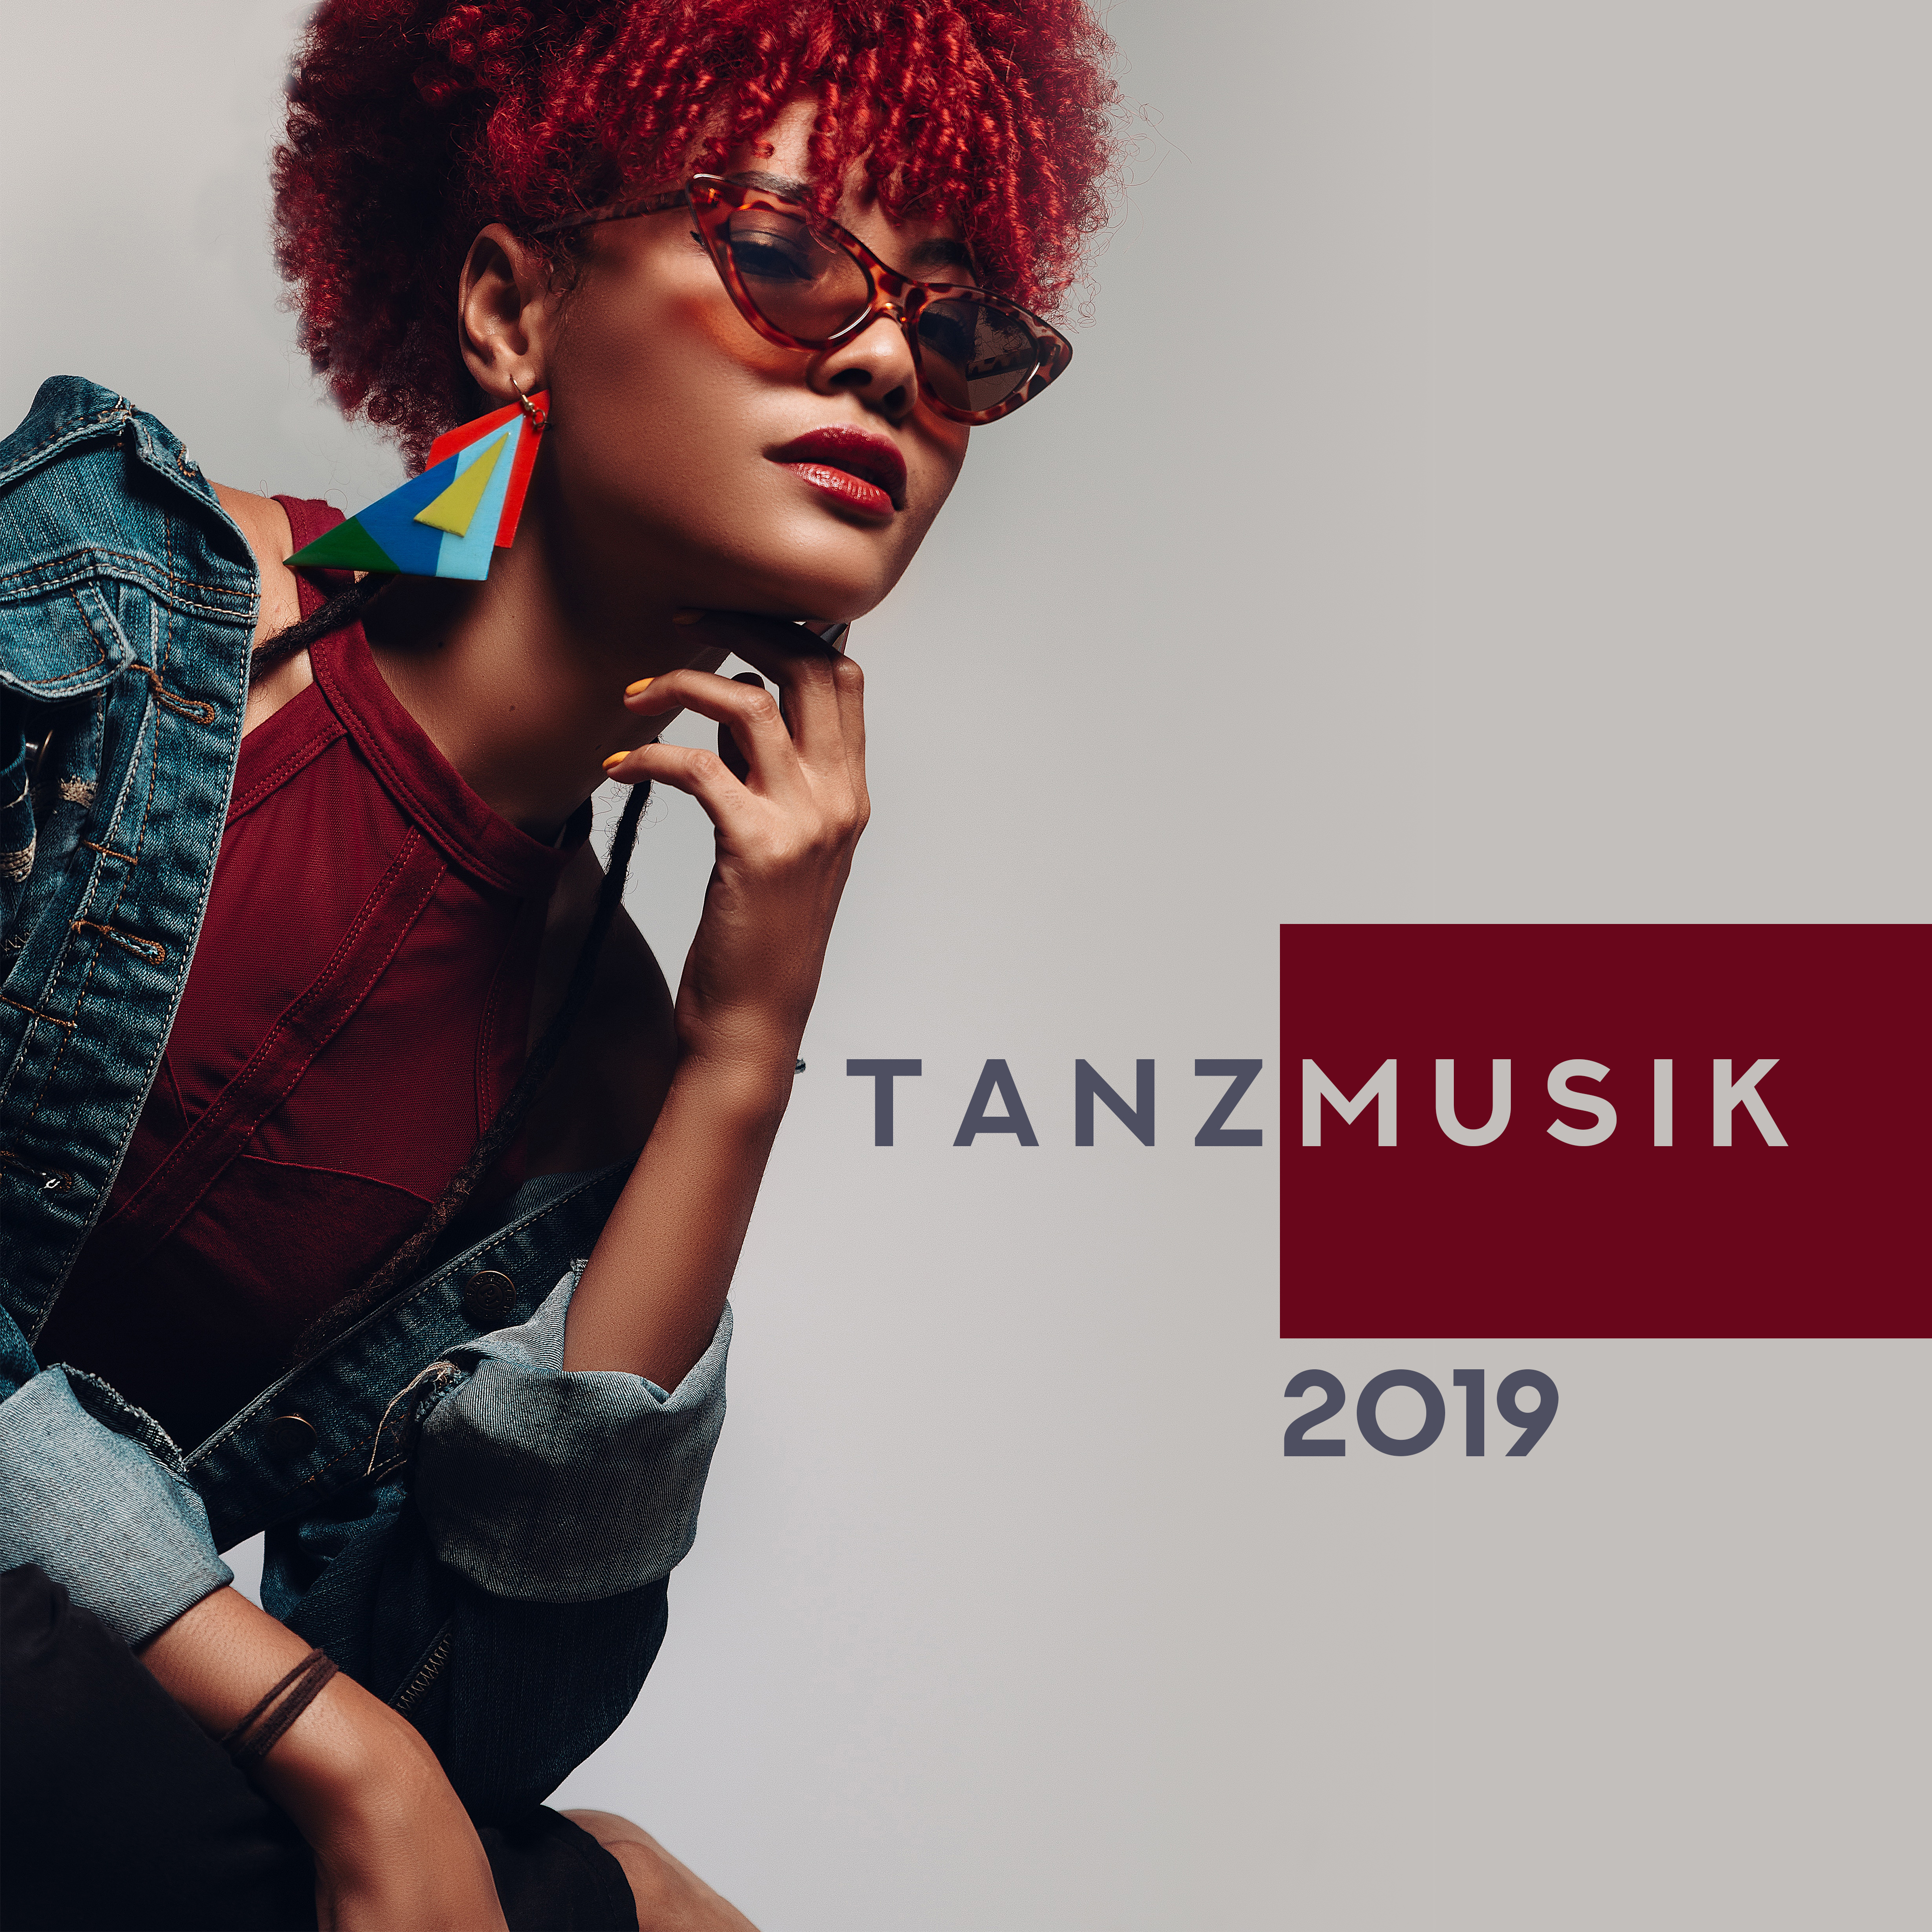 Tanzmusik 2019 - Partymusik, Tiefe Schwingungen, Entspannende beats zum tanzen, Beste party